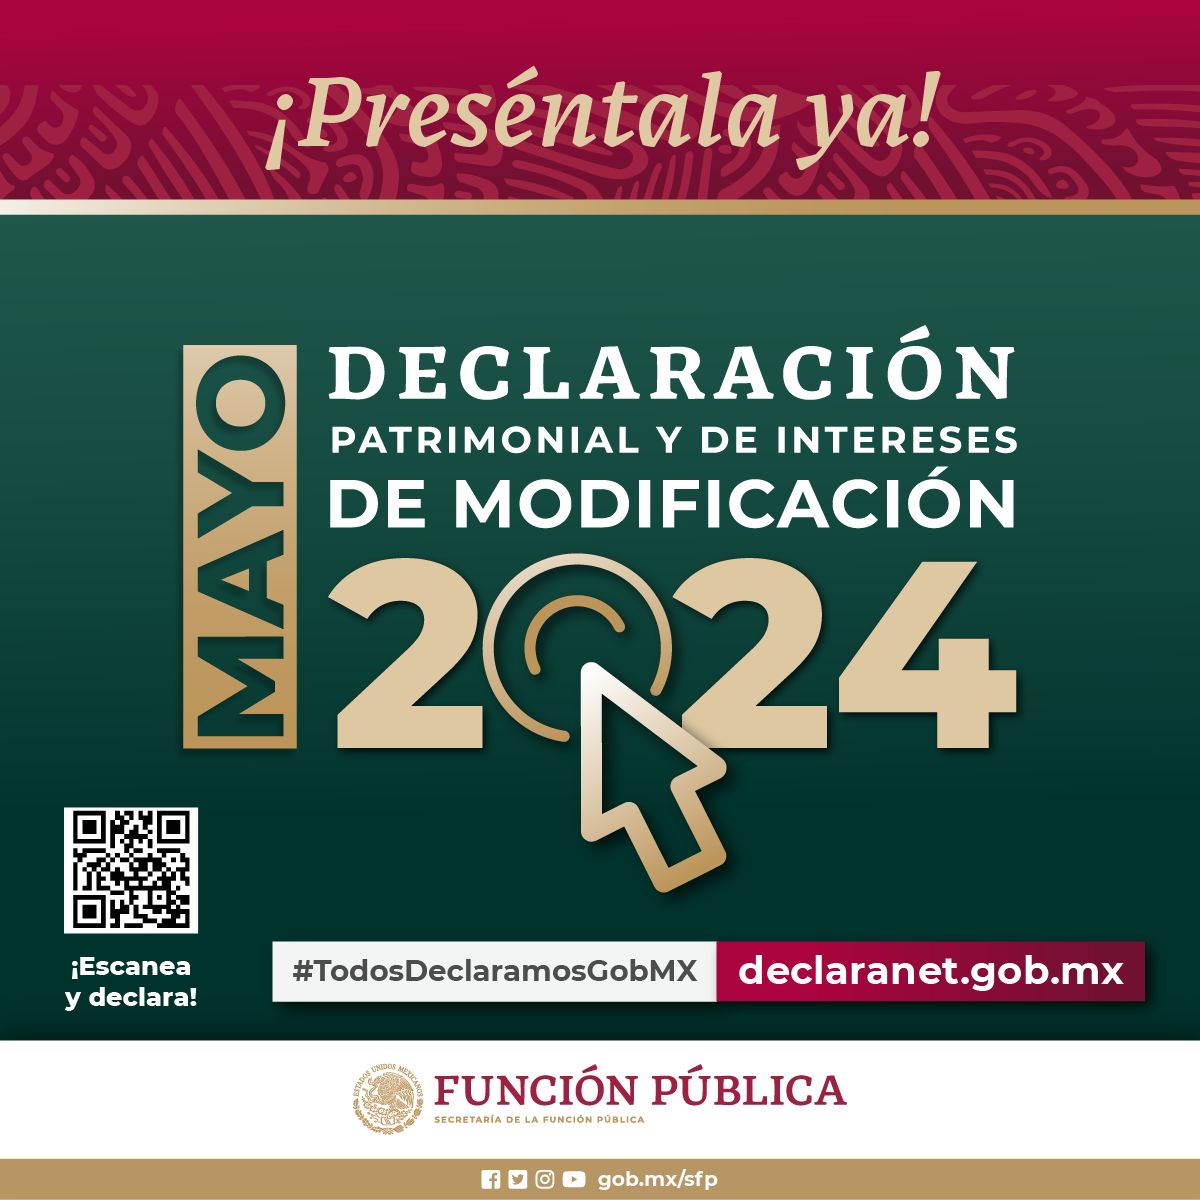 Persona servidora pública federal: Recuerda que #Mayo es el mes para presentar la #DeclaraciónPatrimonial y de intereses, en la modalidad de modificación 2024. Preséntala ya, ingresando a: 🌐 declaranet.gob.mx #DeclaraNet2024 #TodosDeclaramosGobMx